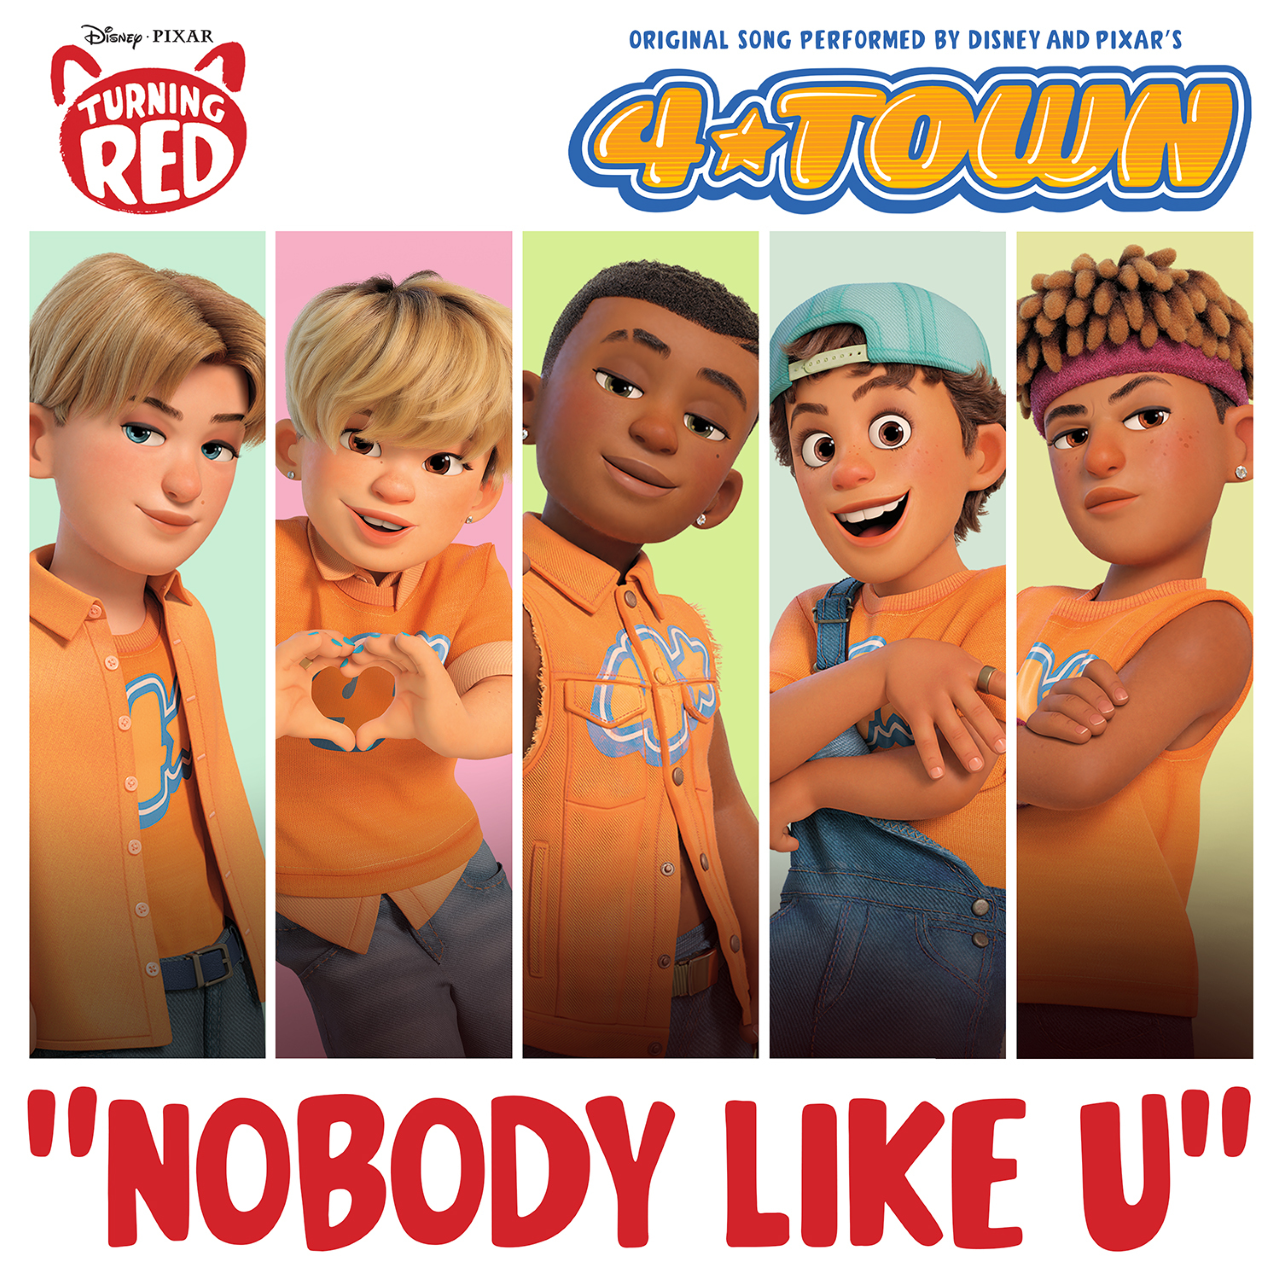 4*TOWN — Nobody like U cover artwork